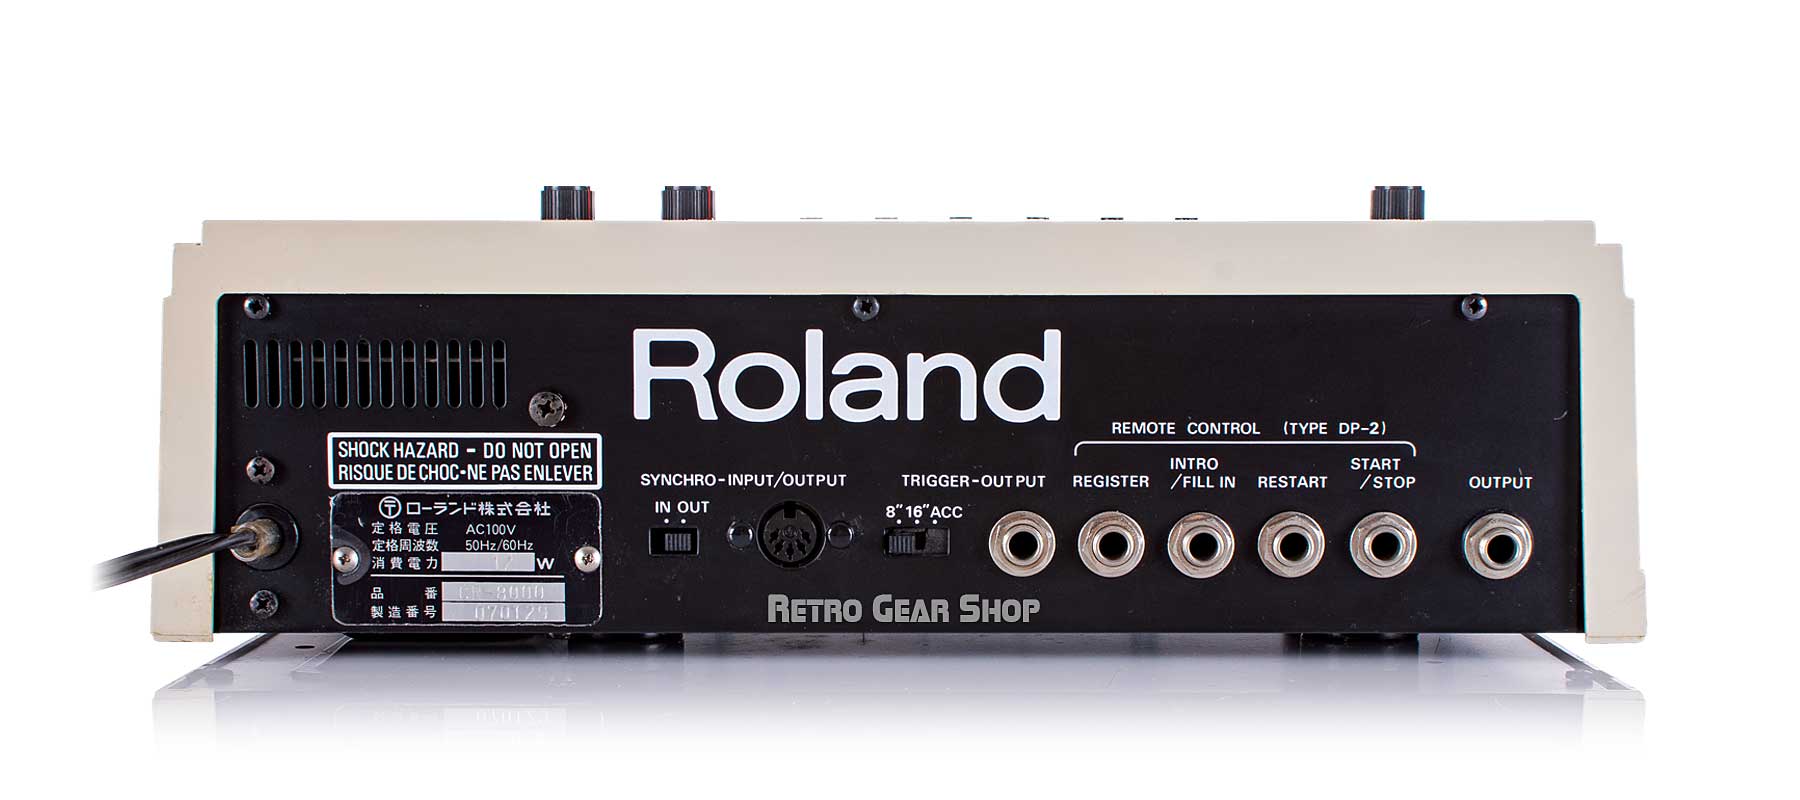 Roland CR-8000 Rear